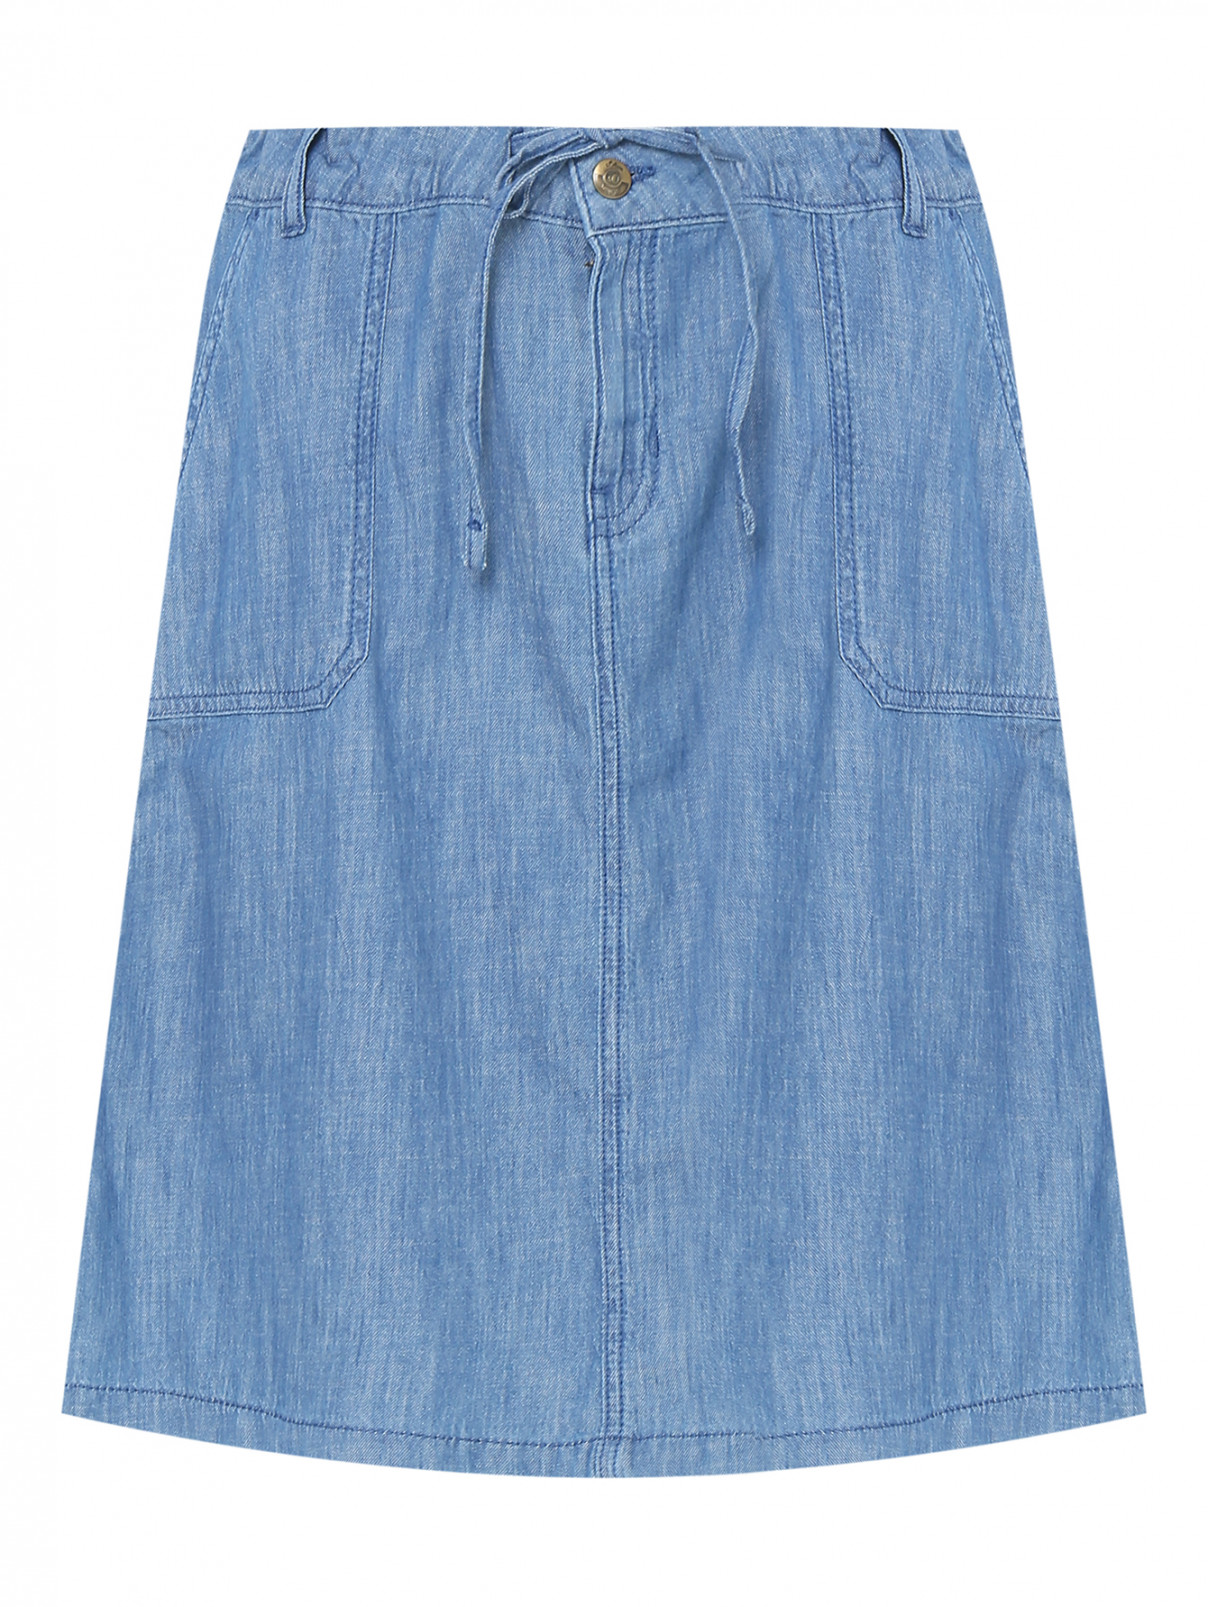 Джинсовая юбка с накладными карманами S.Oliver  –  Общий вид  – Цвет:  Синий